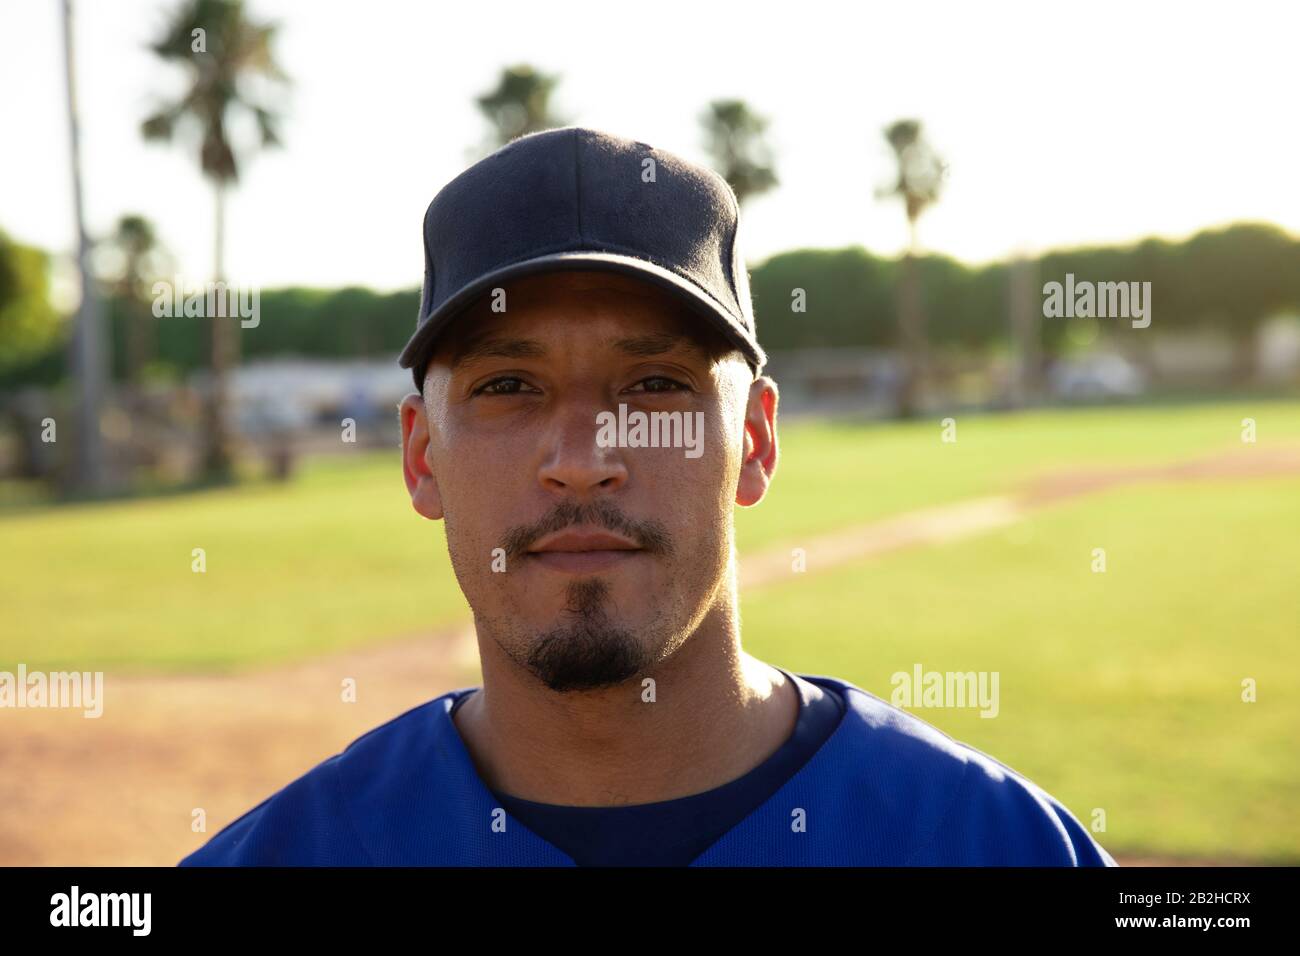 Joueur de baseball regardant l'appareil photo Banque D'Images